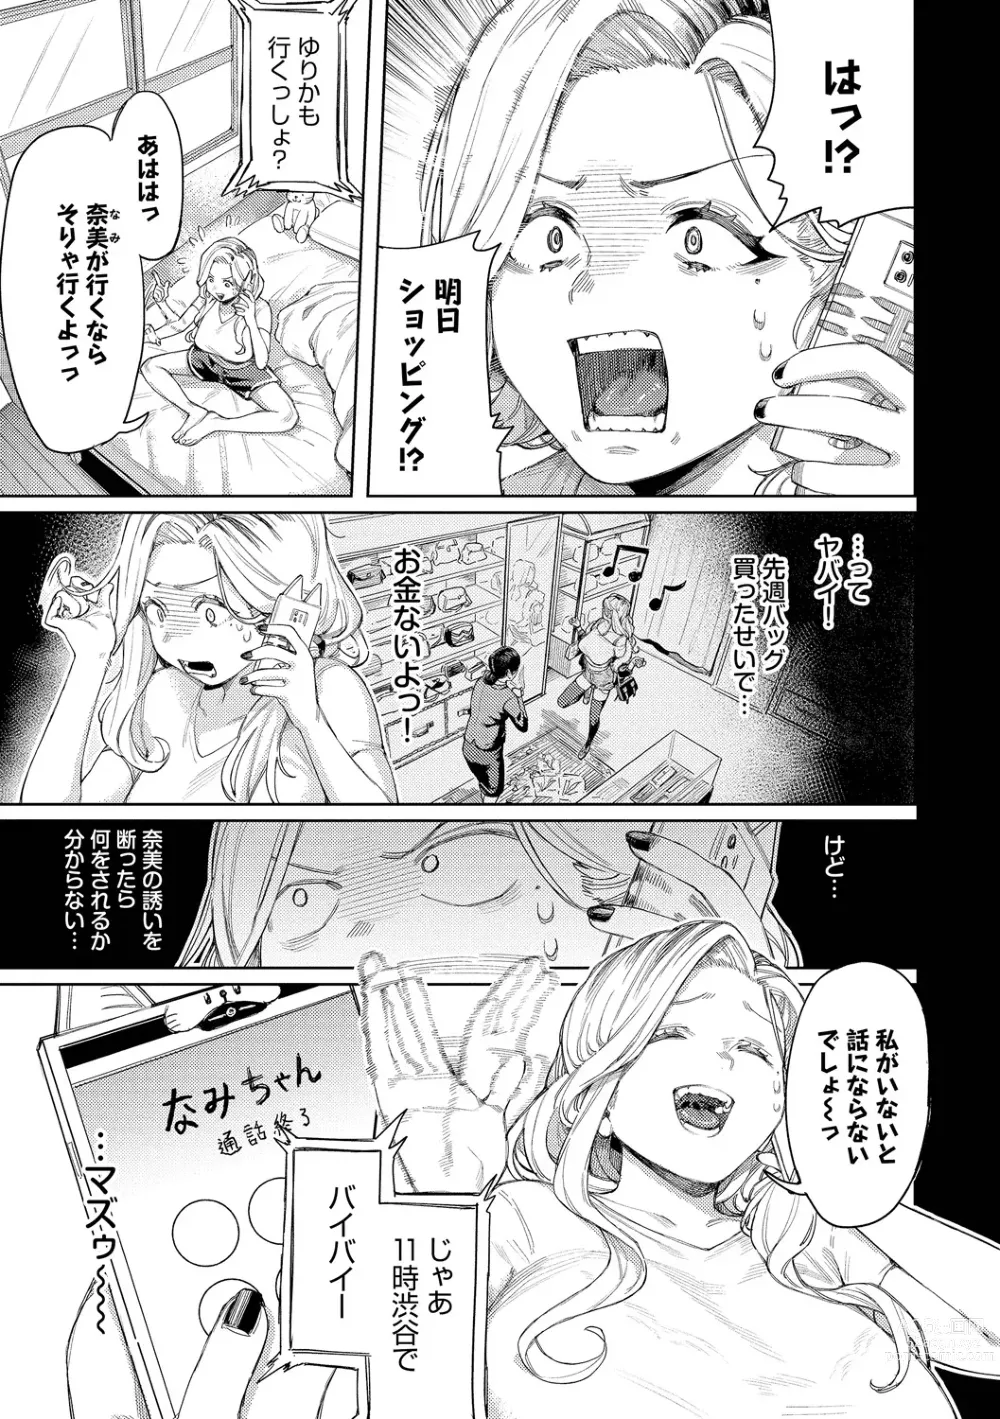 Page 5 of manga Mesuochi Showtime